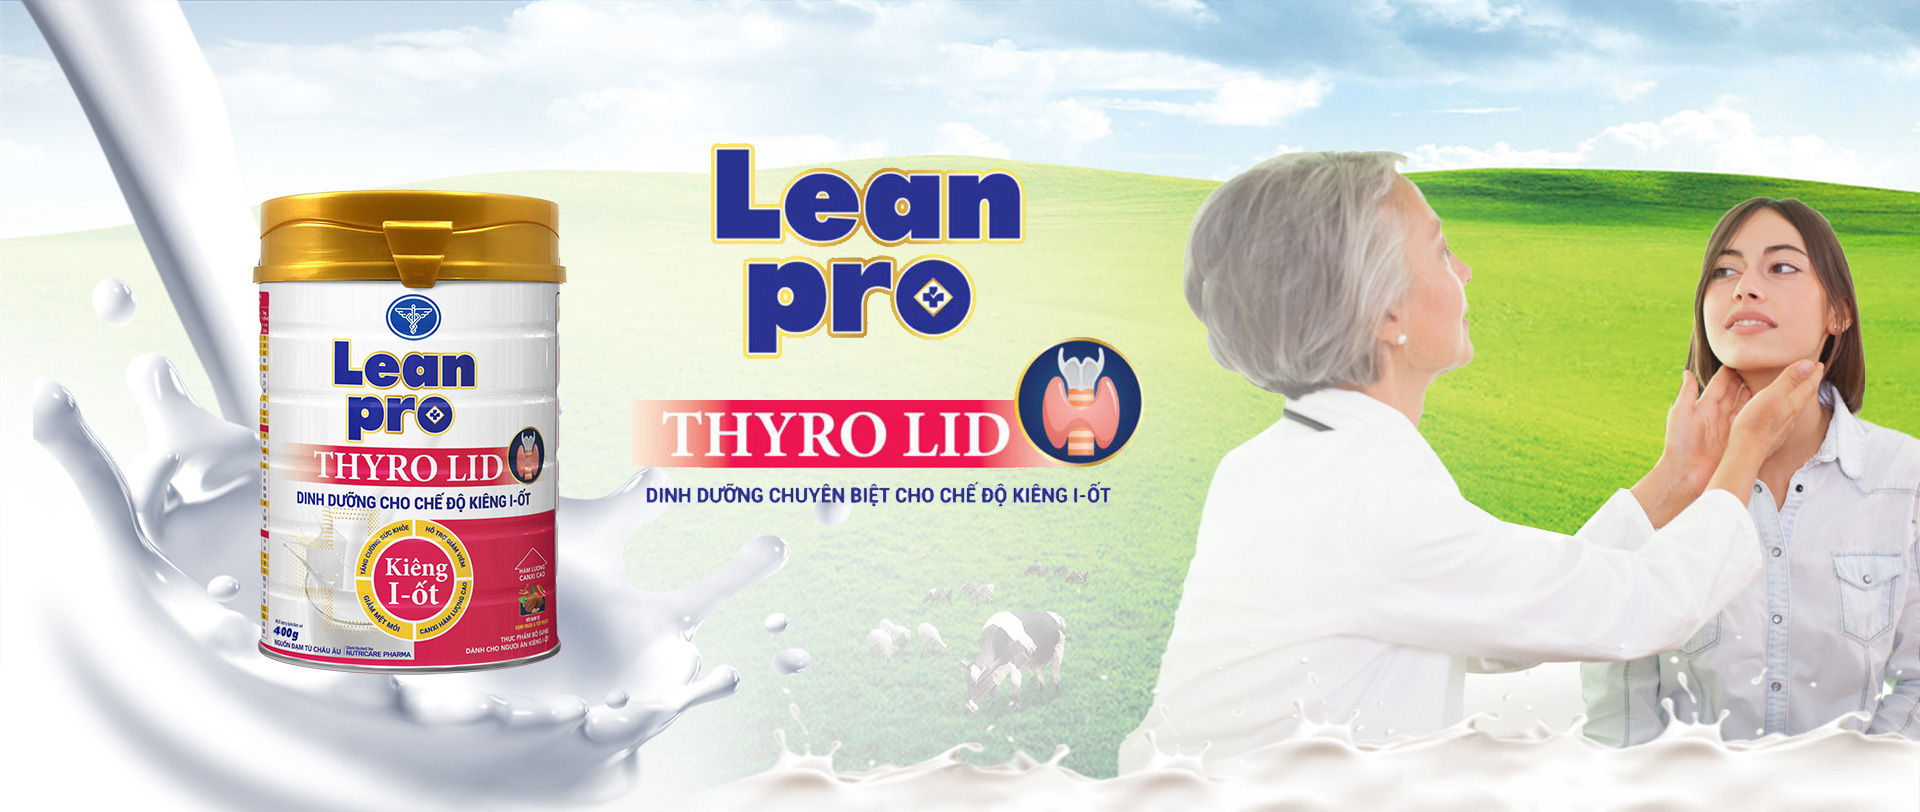 Leanpro Thyro LID 400g